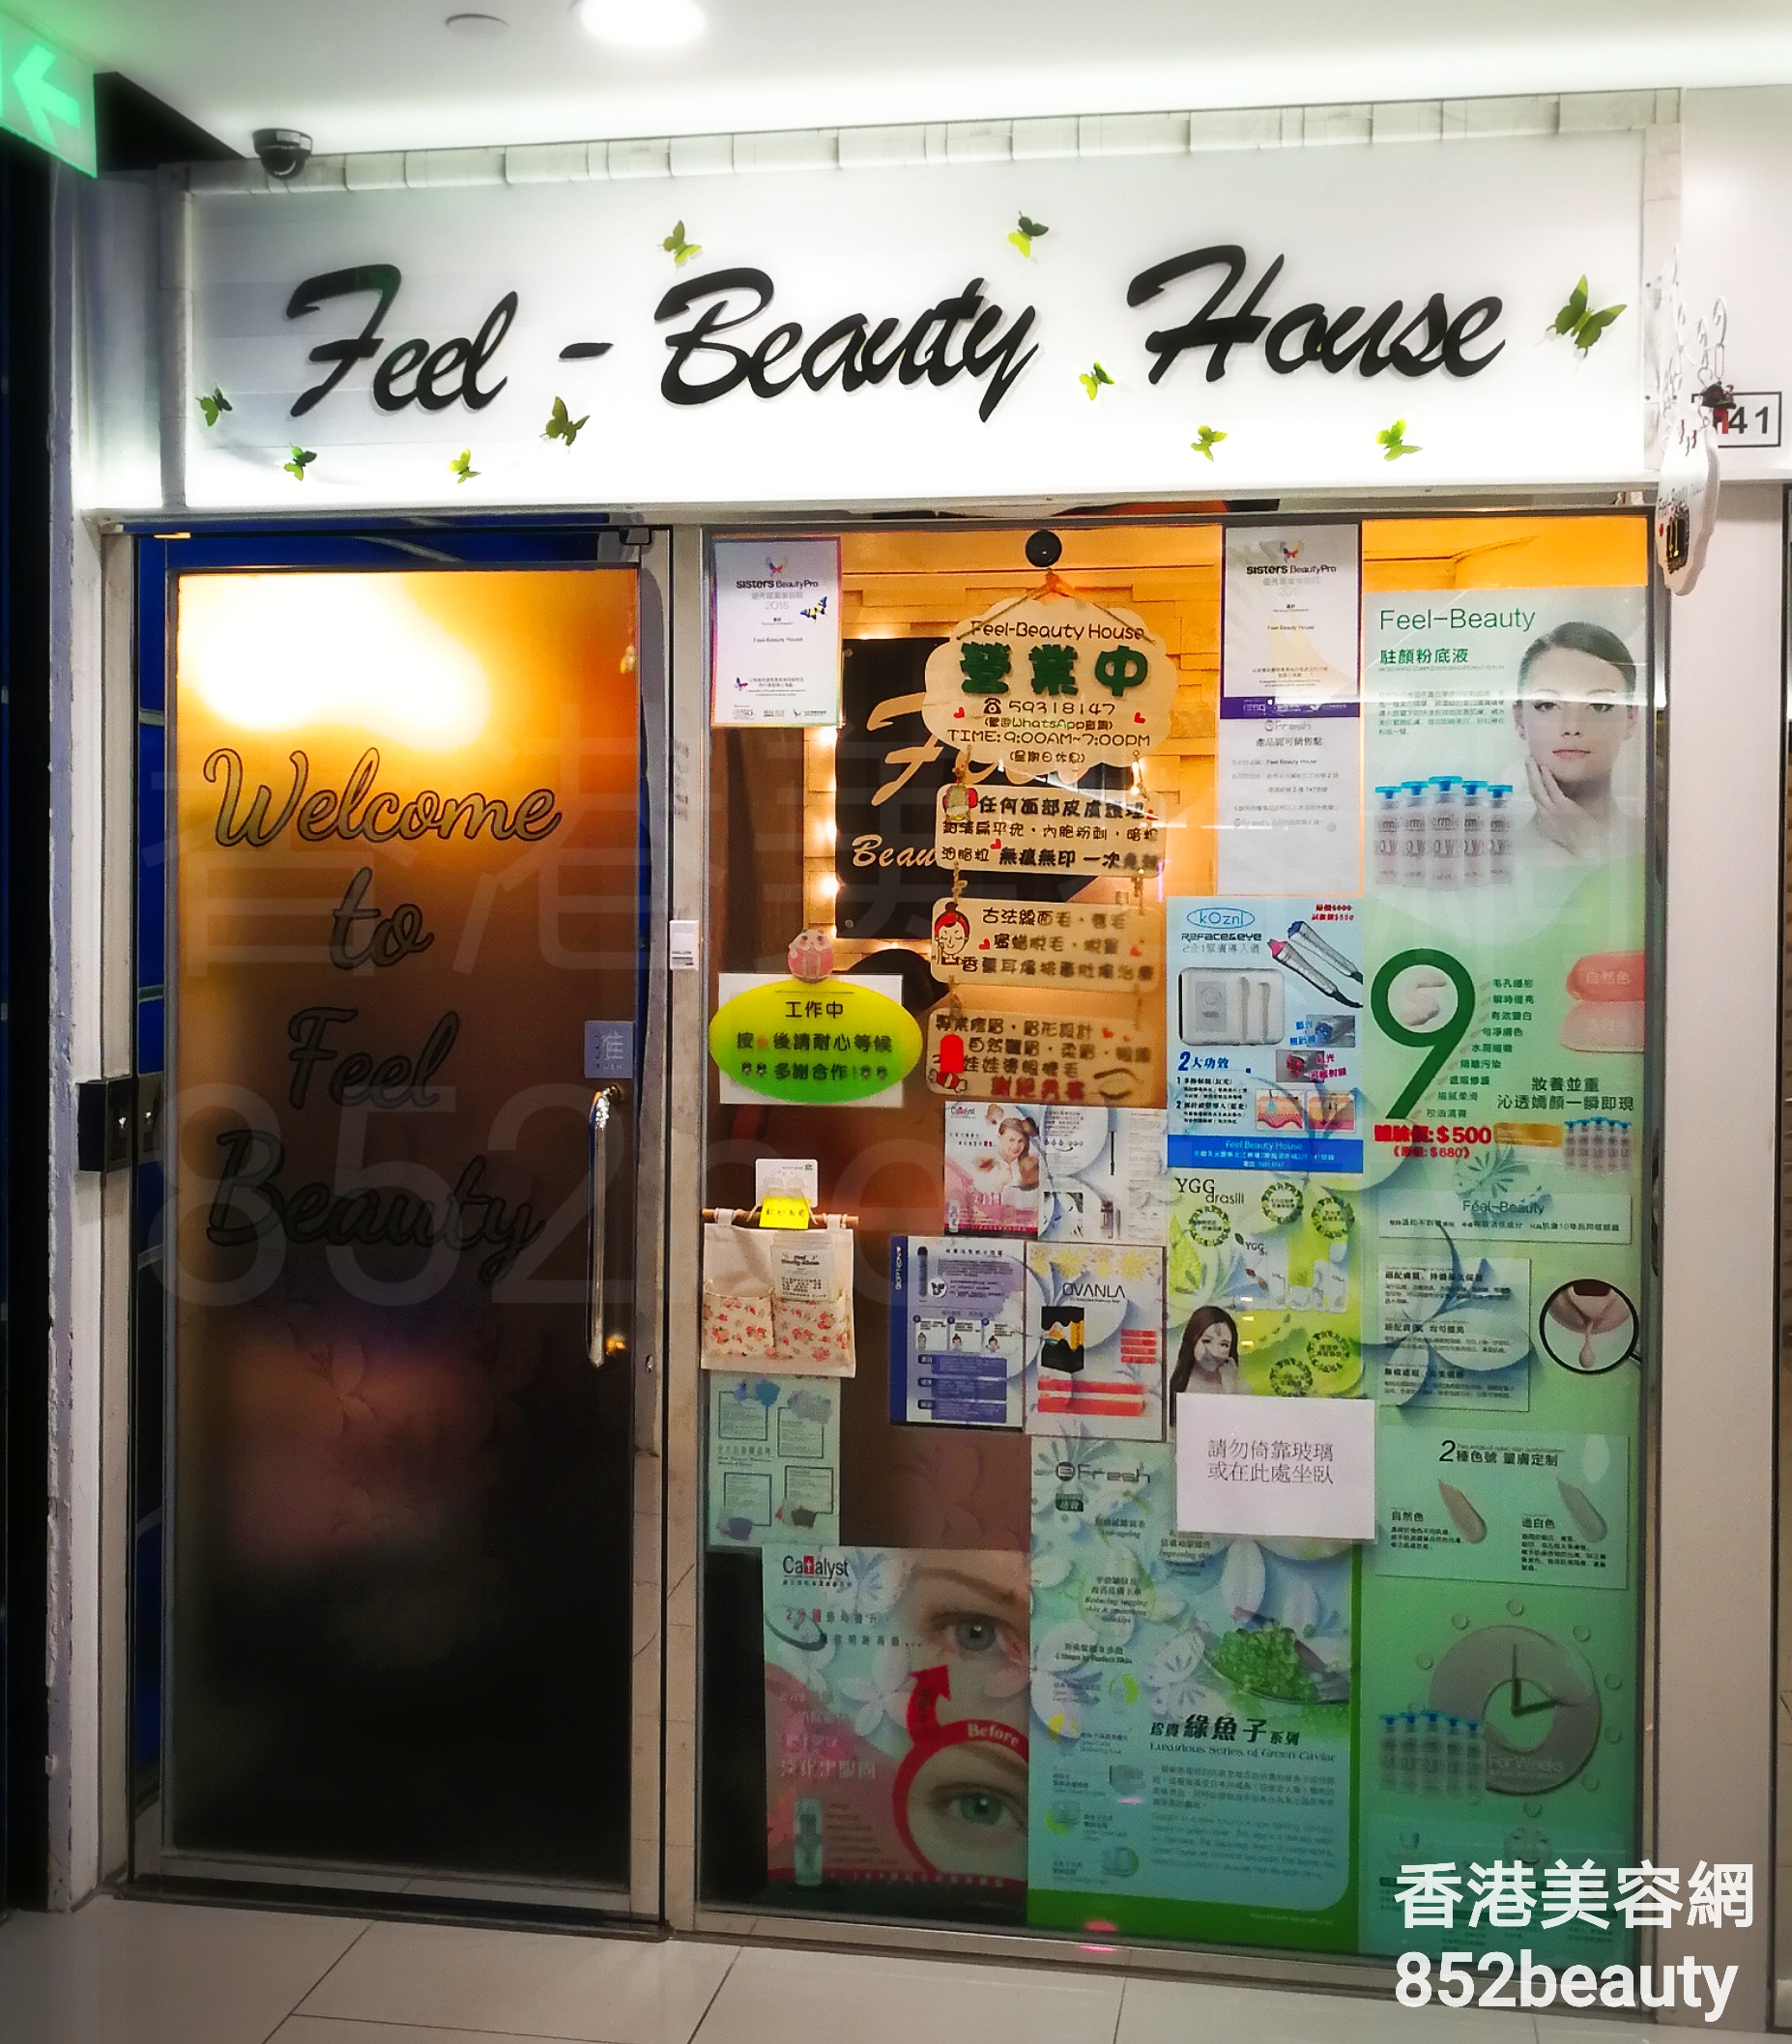 Eye Care: Feel-Beauty House